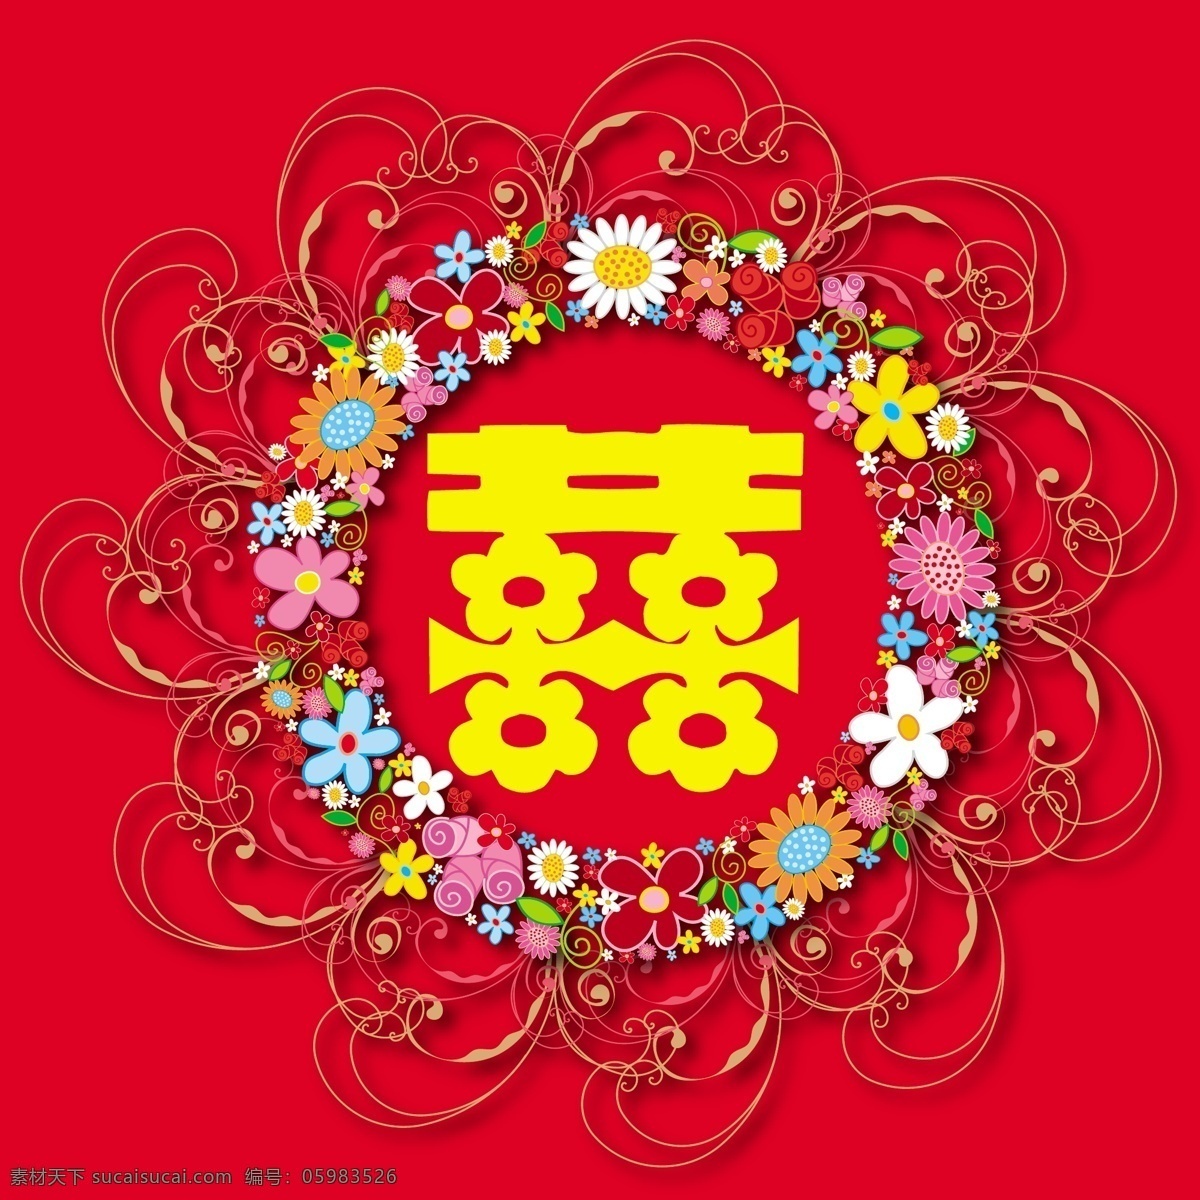 婚庆 喜字 红双喜 带 精美 底纹 双喜 中国 风格 情人节 节日素材 矢量